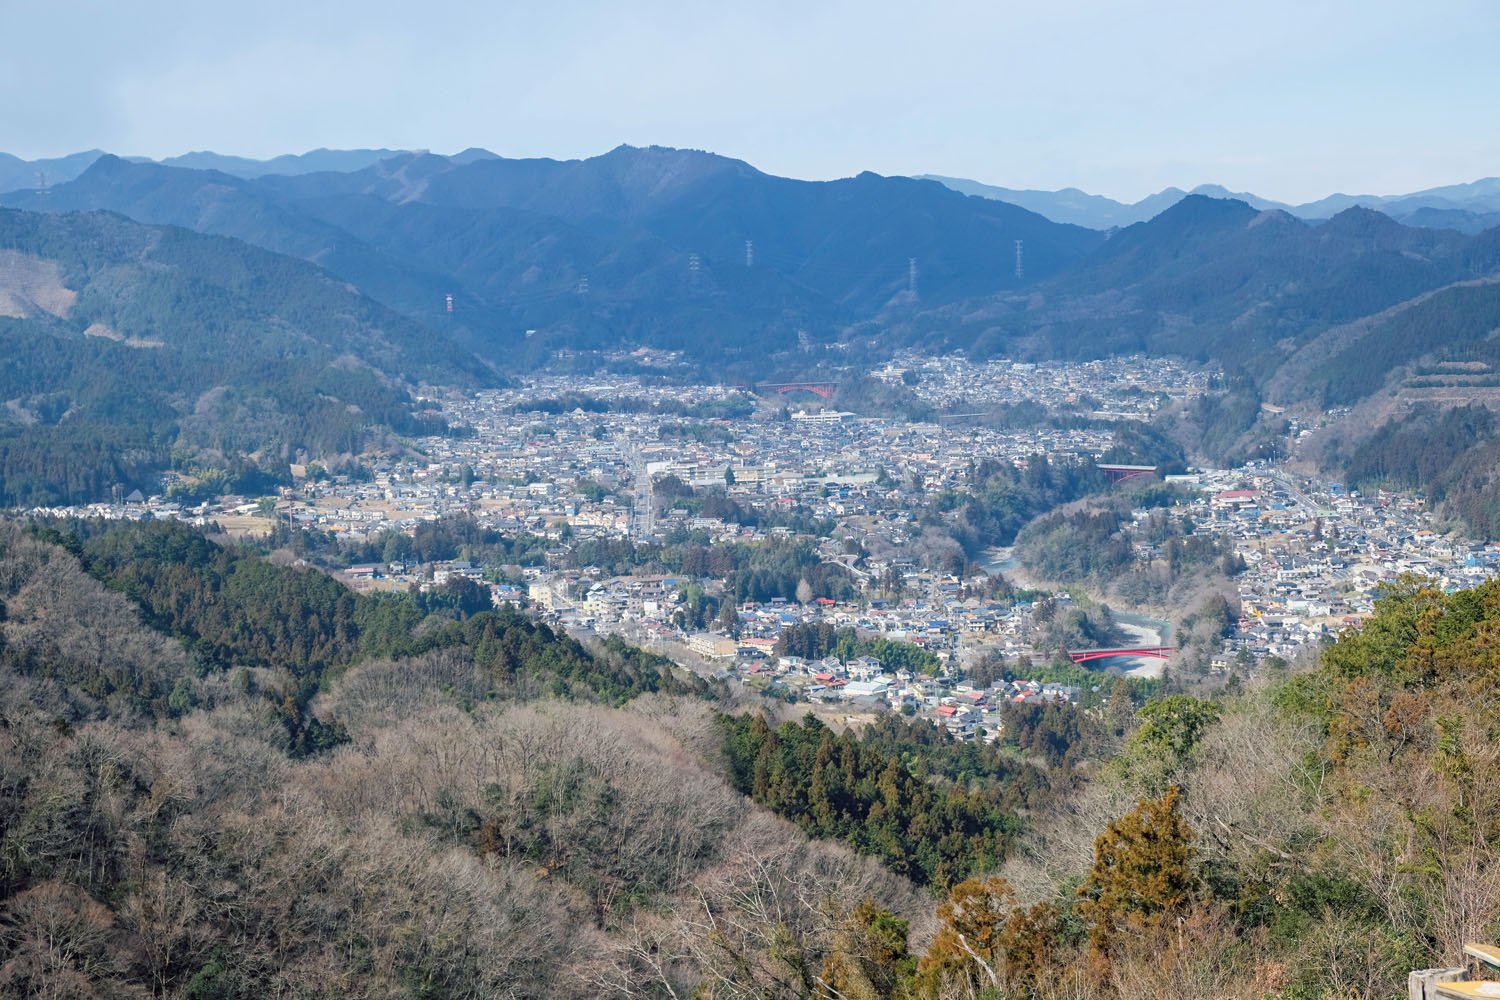 赤ぼっこからの眺望。中央の高い山は高水山、その左手の奥には棒ノ折山も見える。手前には日向和田の街並みが広がっていた。